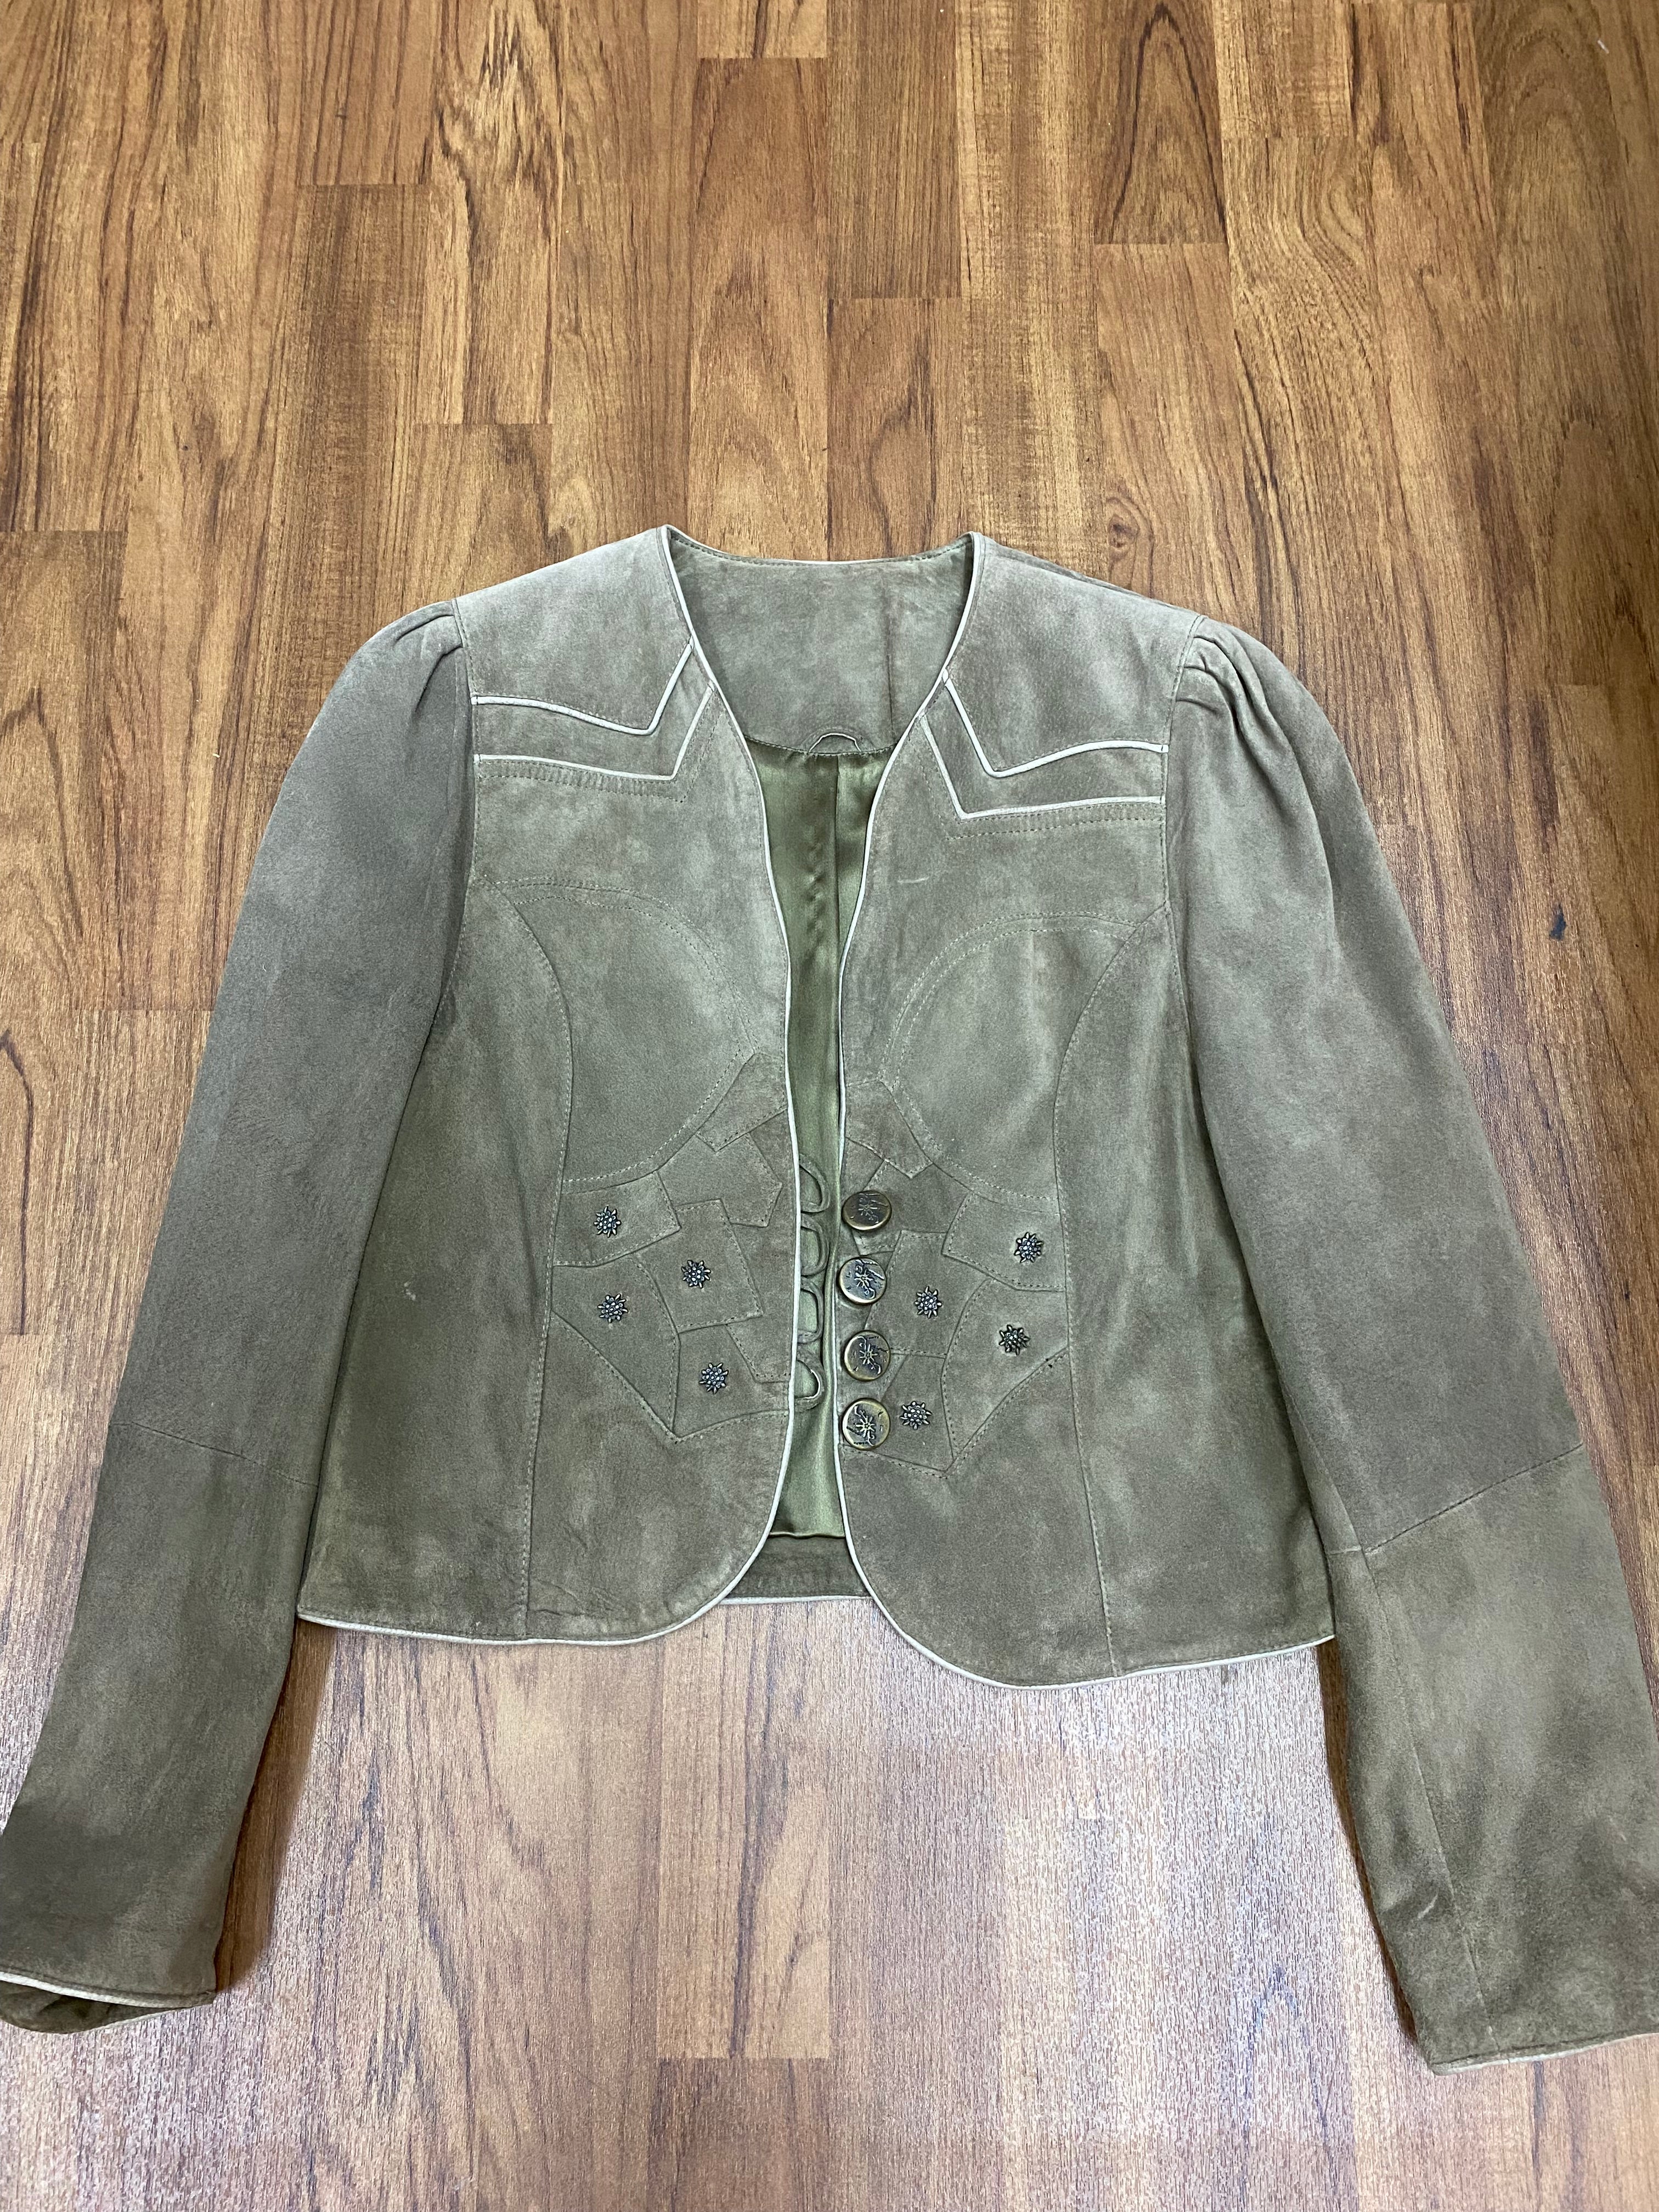 Trachtenlederjacke Vintage Jacke kurz Damen Trachten Gr.38